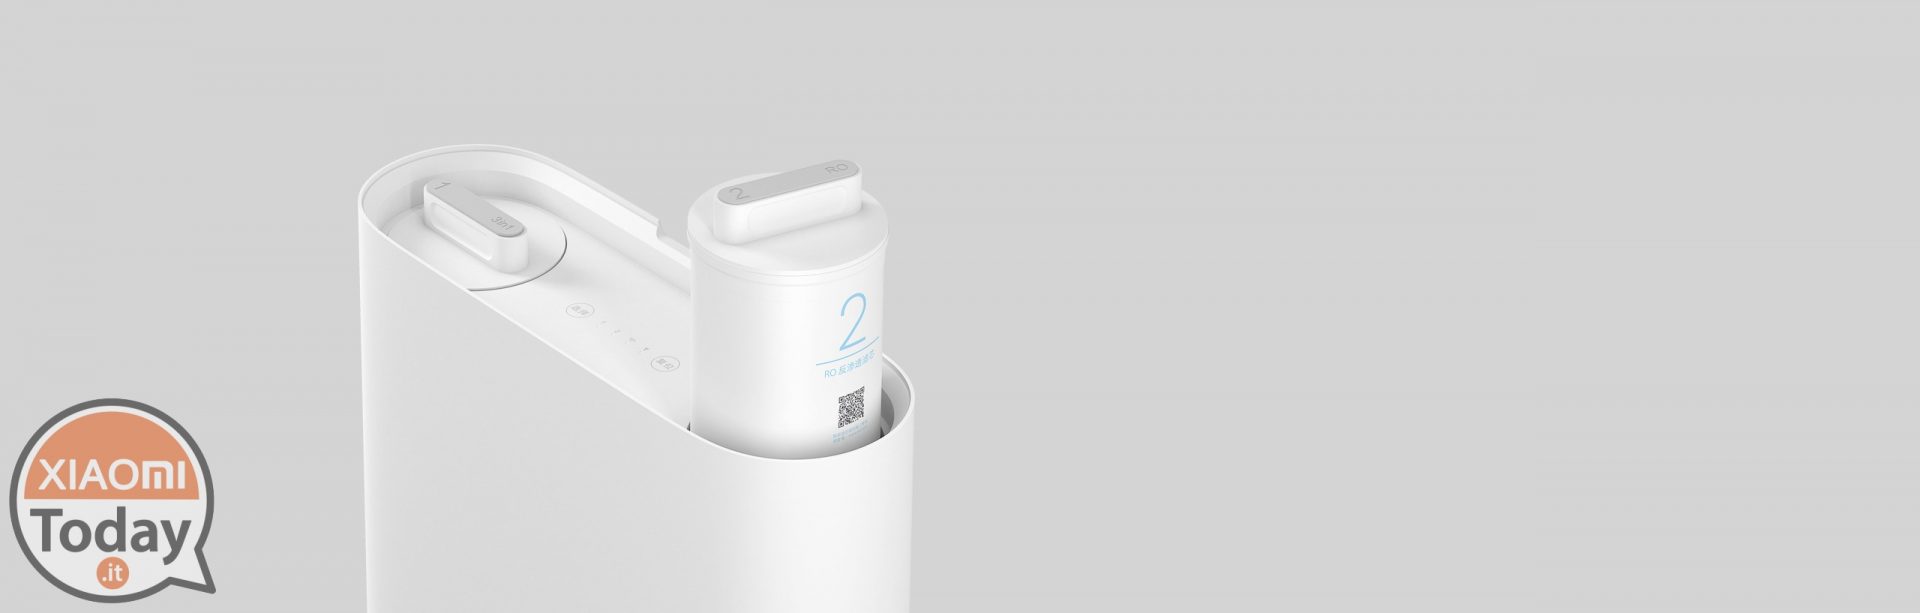 Xiaomi Water Purifier 1A